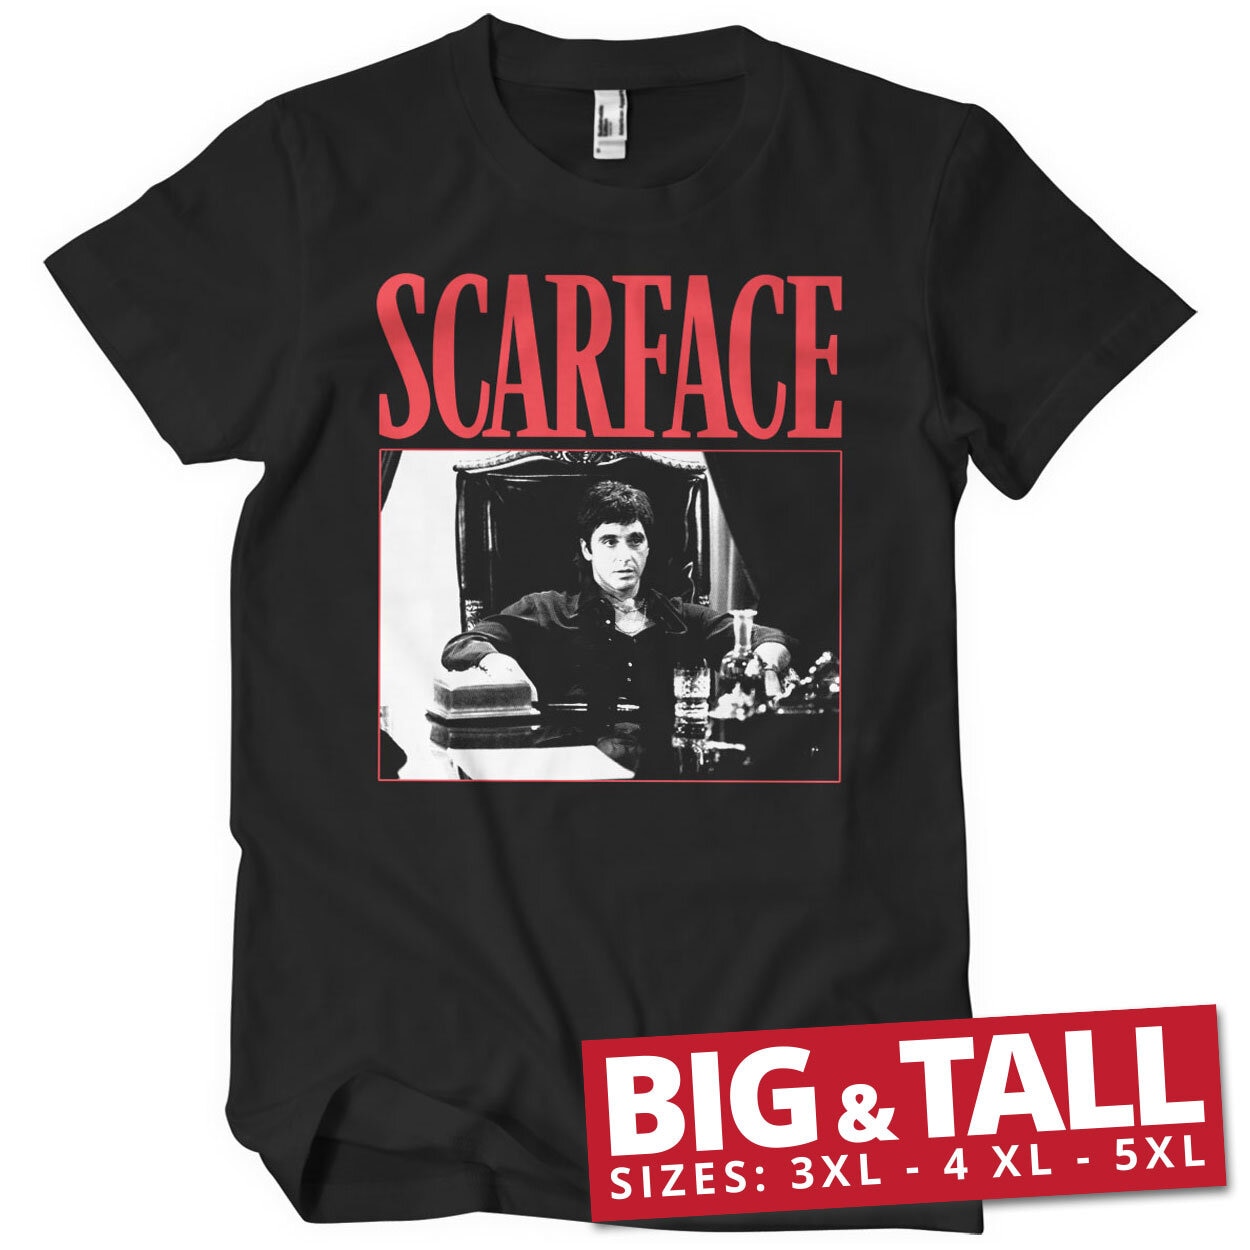 Tony Montana - The Power Big & Tall T-Shirt